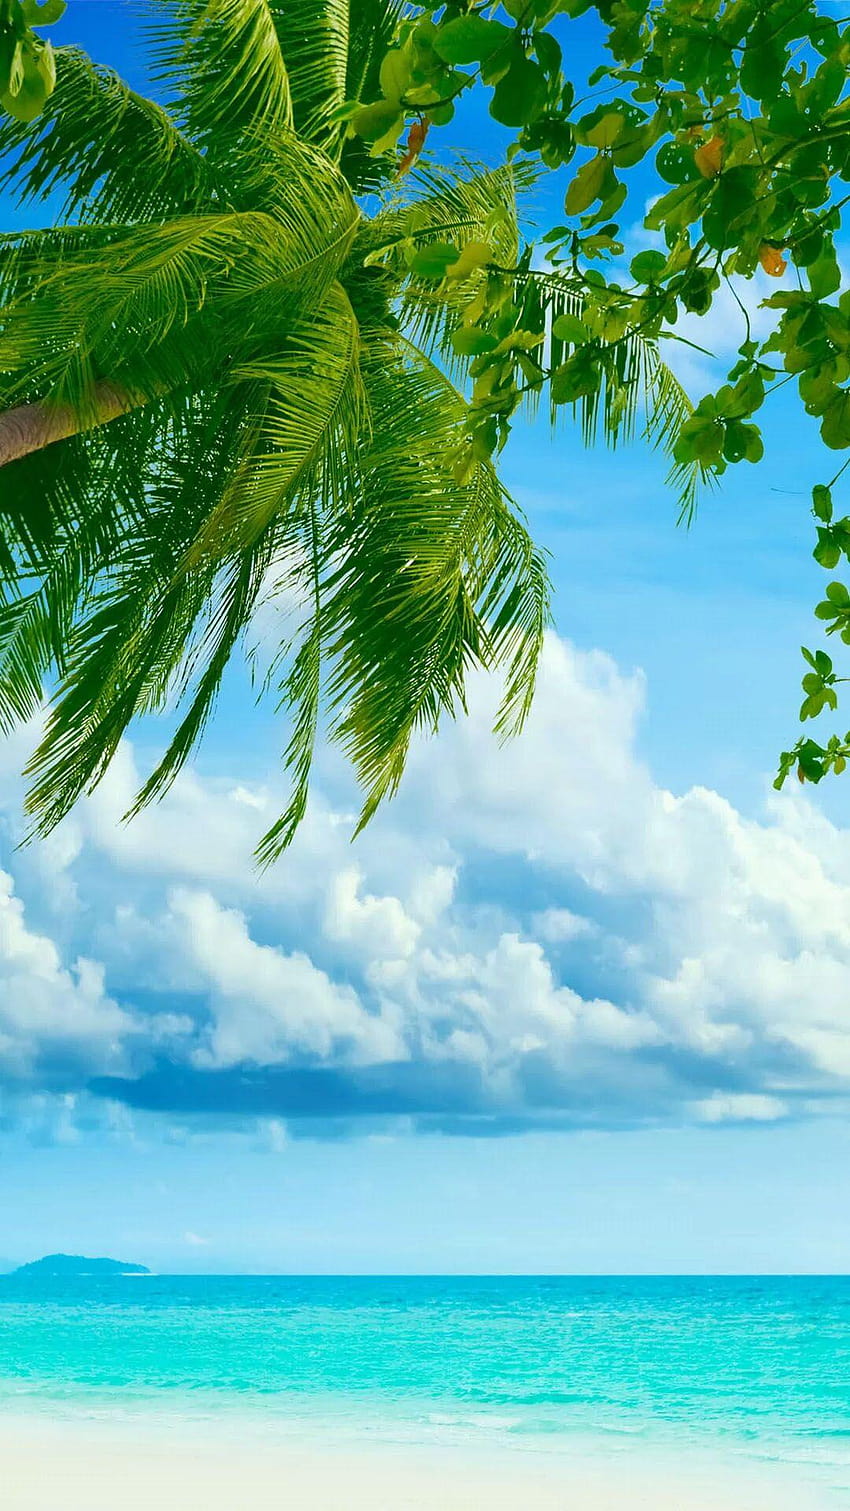 Árbol de coco de playa tropical Android fondo de pantalla del teléfono